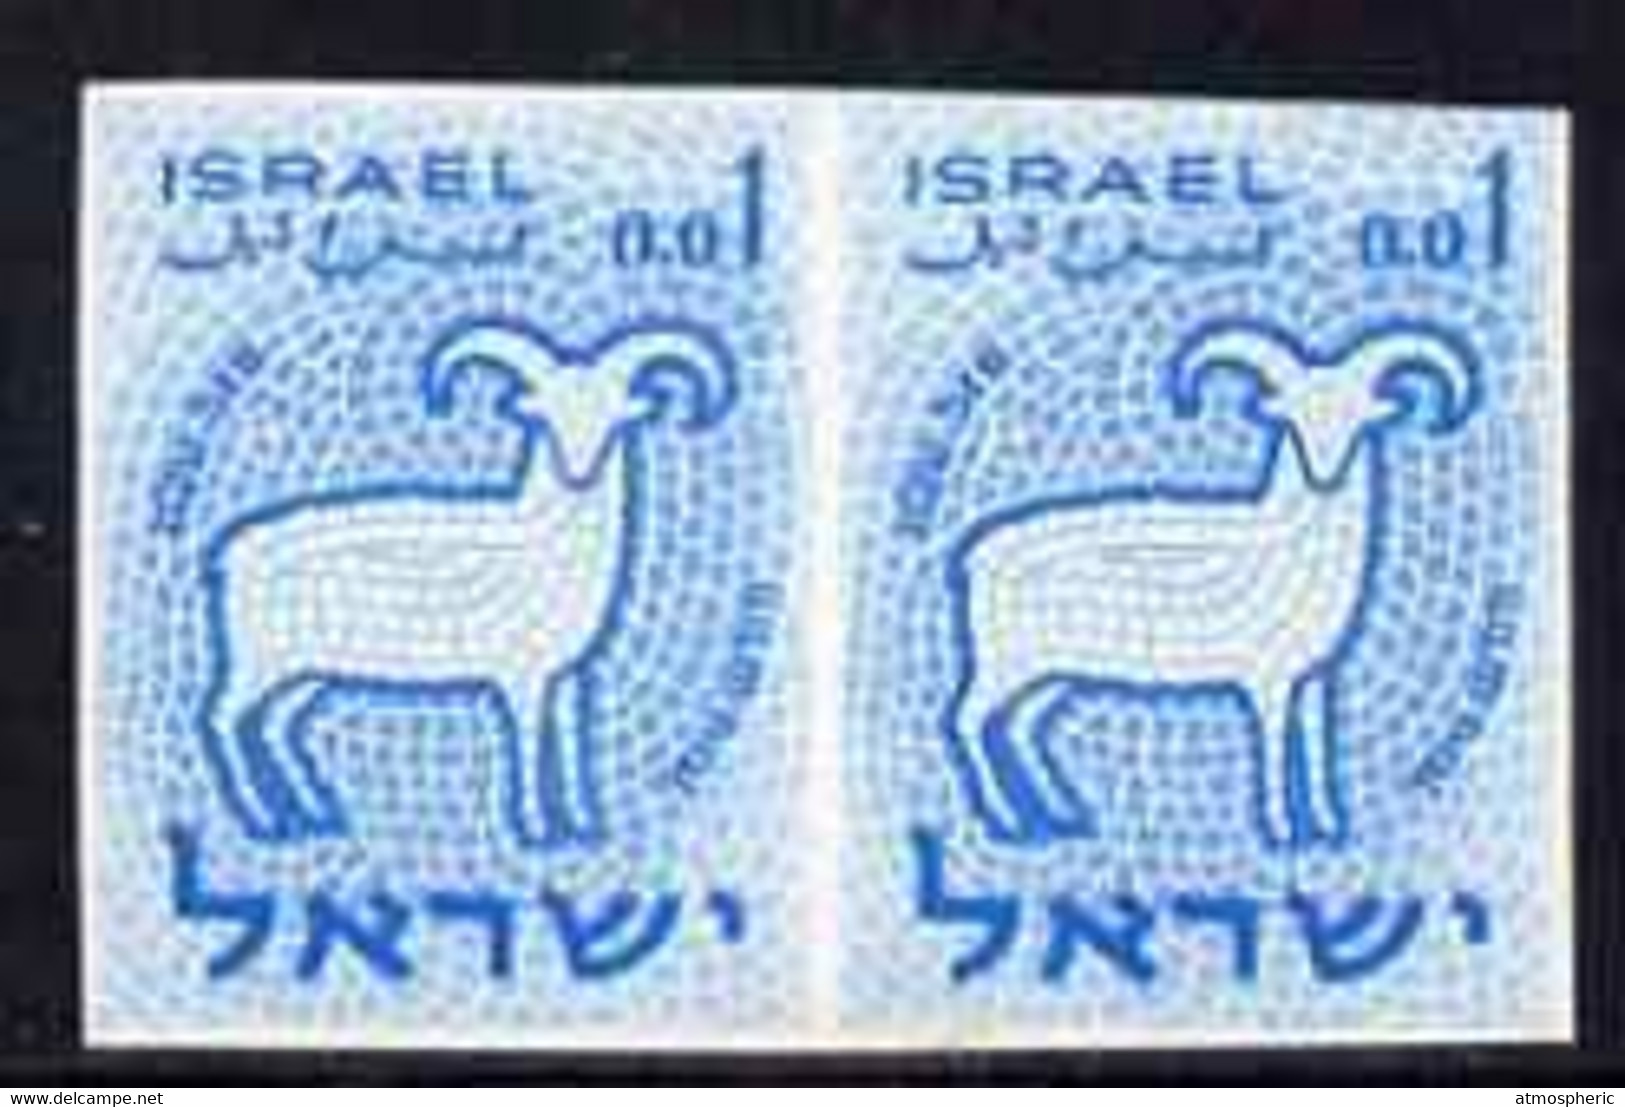 77640 Israel 1961 Zodiac 1a Aries Imperf Pair In Blue (issued Stamp Was Emerald) From The Only Sheet Known U/M - Geschnittene, Druckproben Und Abarten